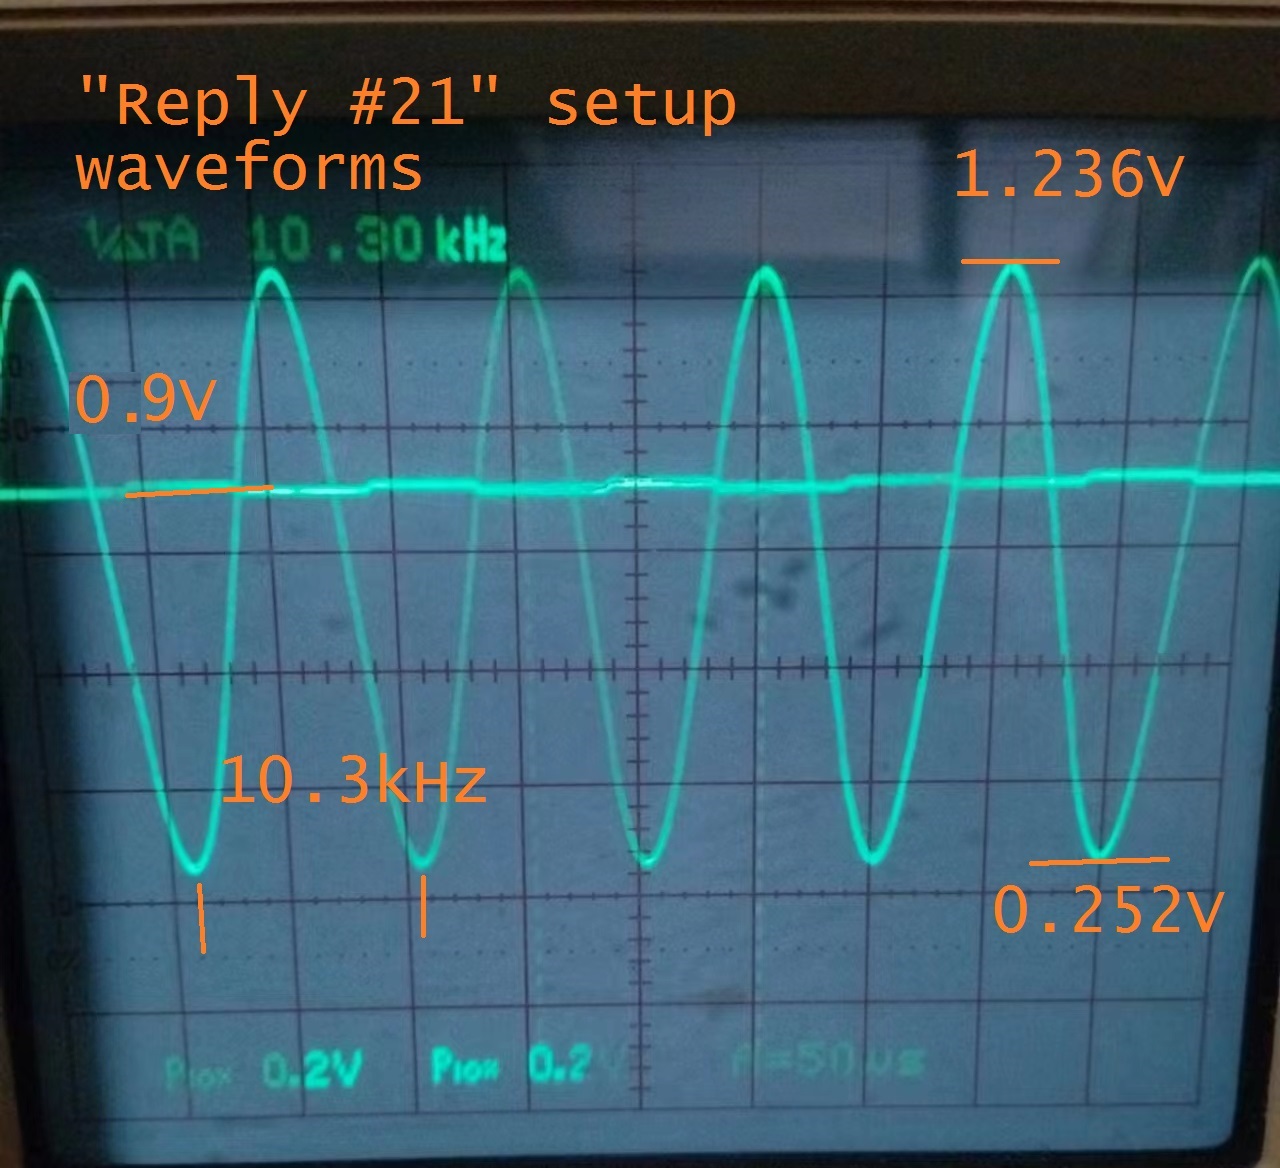 Reply 21 Waveform.jpg